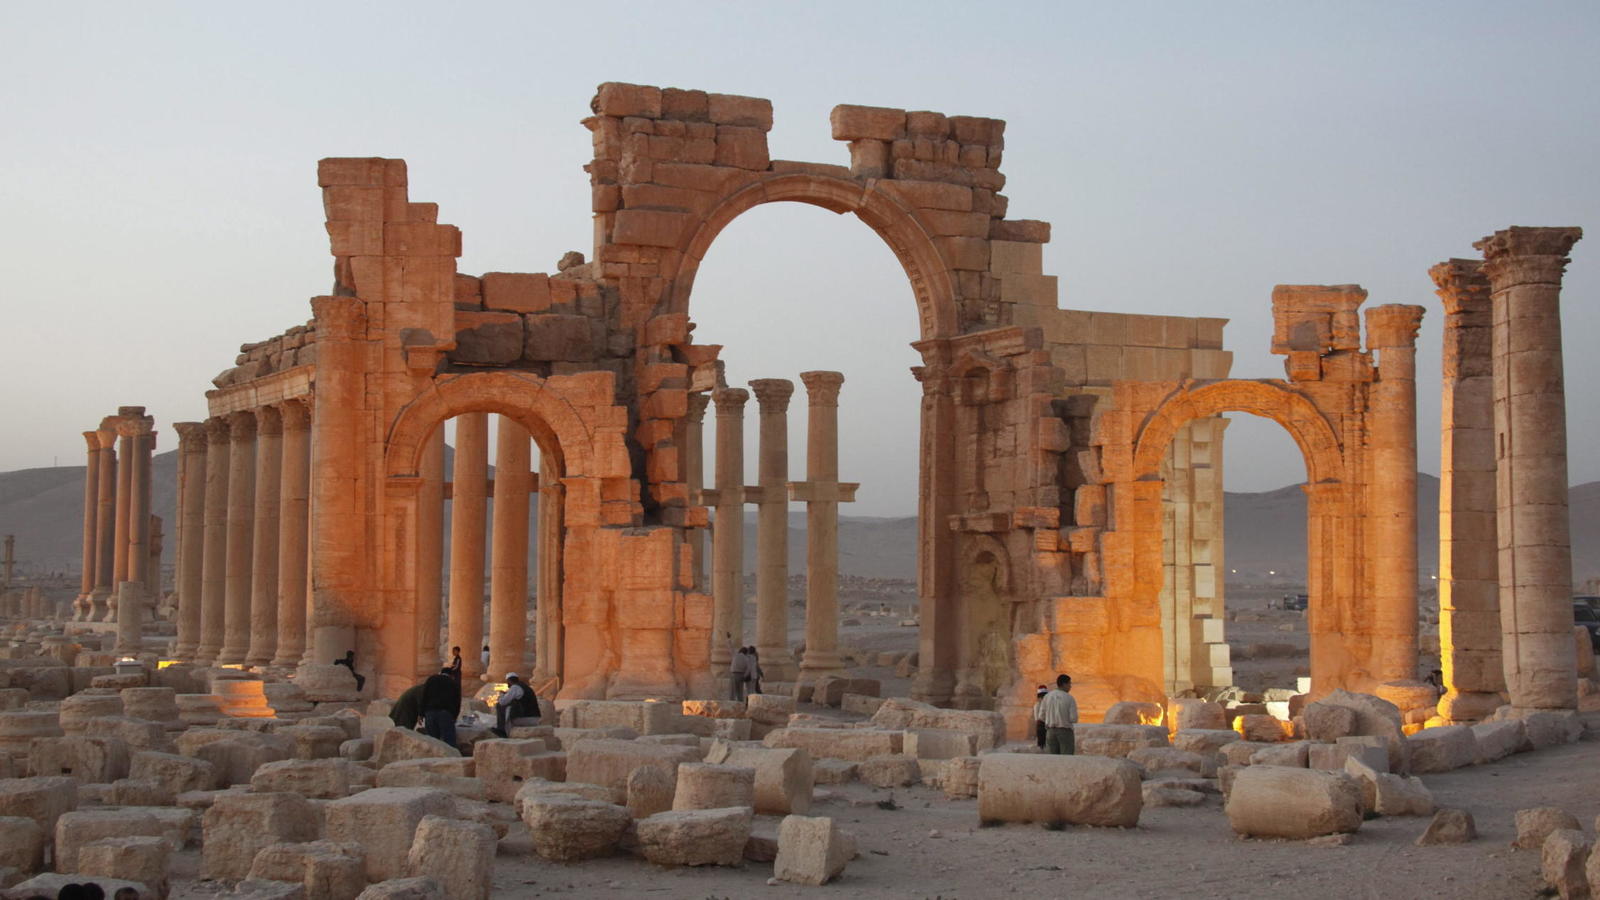  Enlistan el patrimonio cultural destruido por grupos extremistas